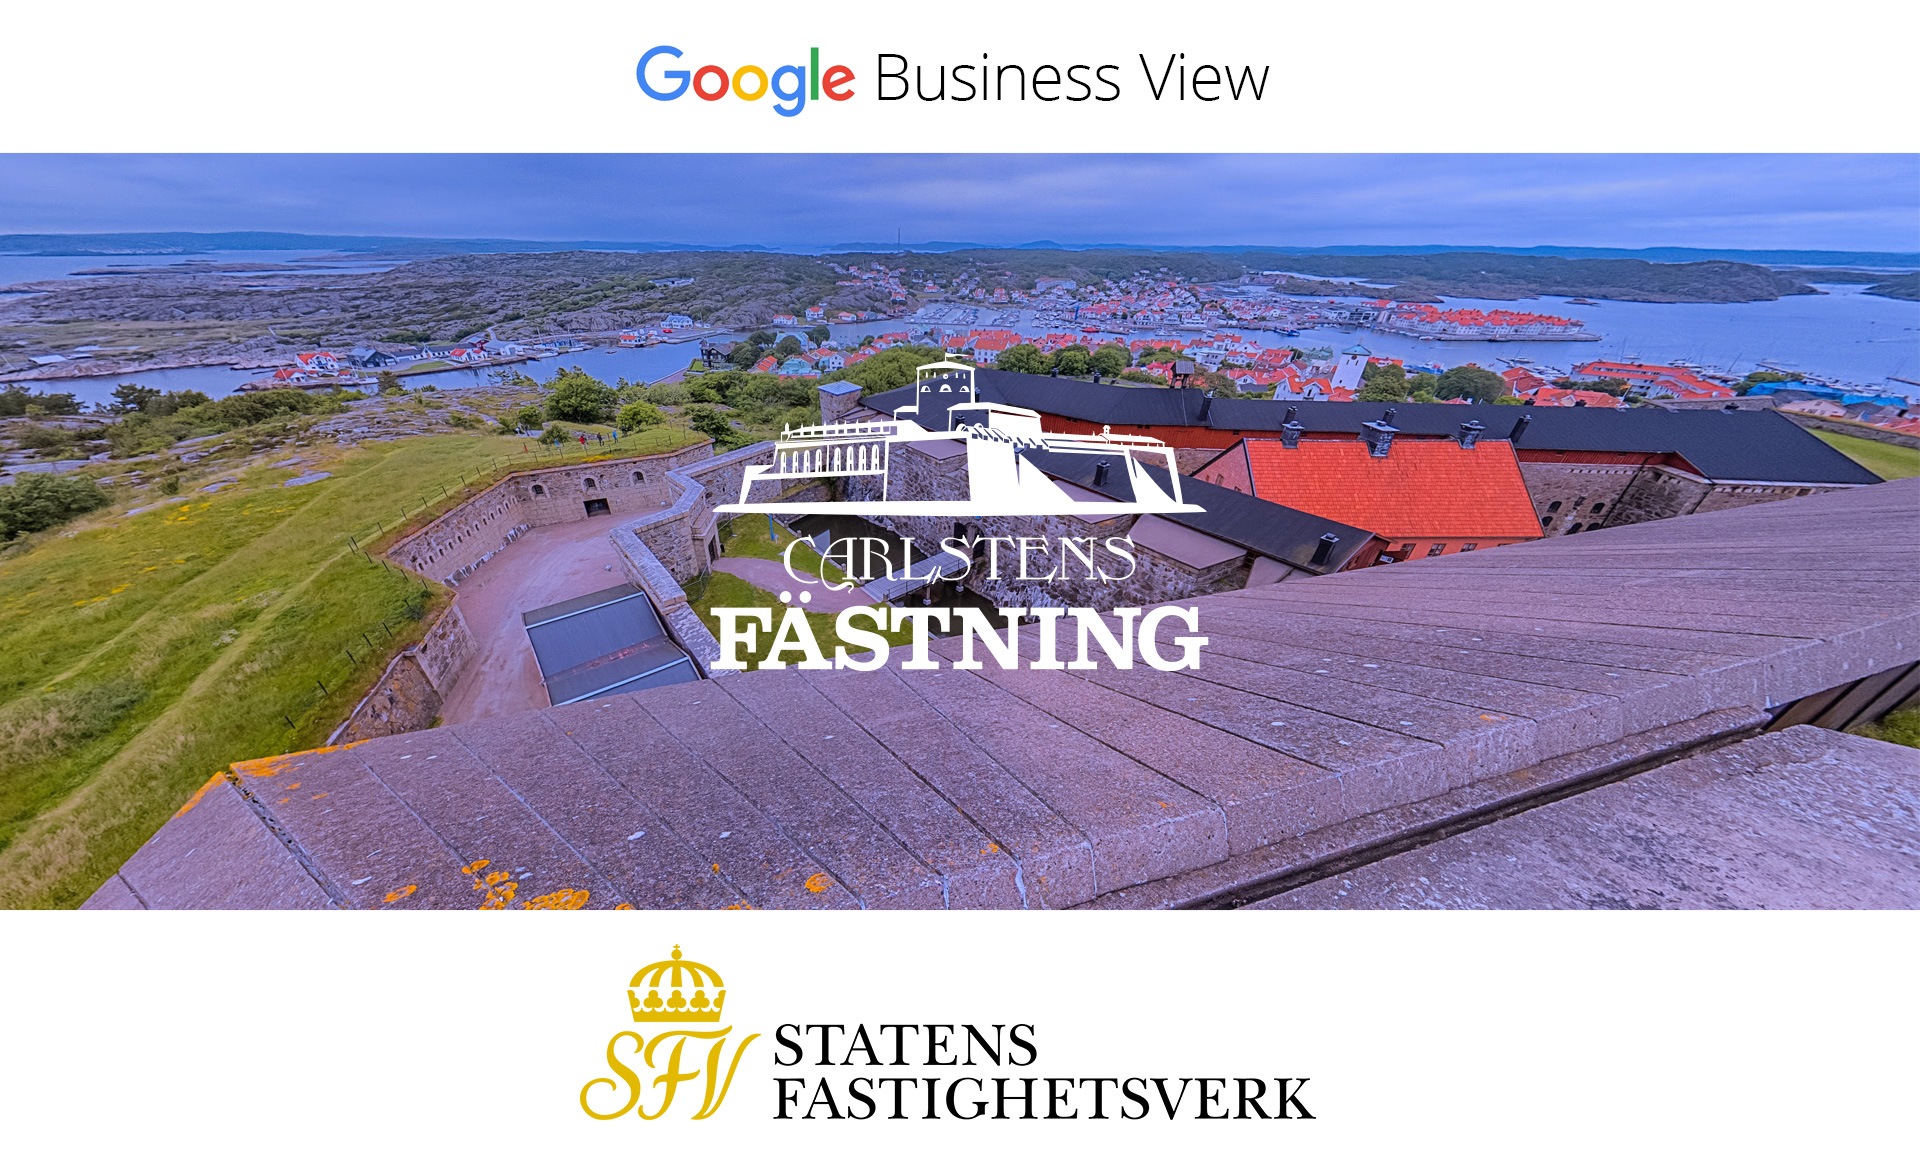 Bästa SEO byrå - Google Business View